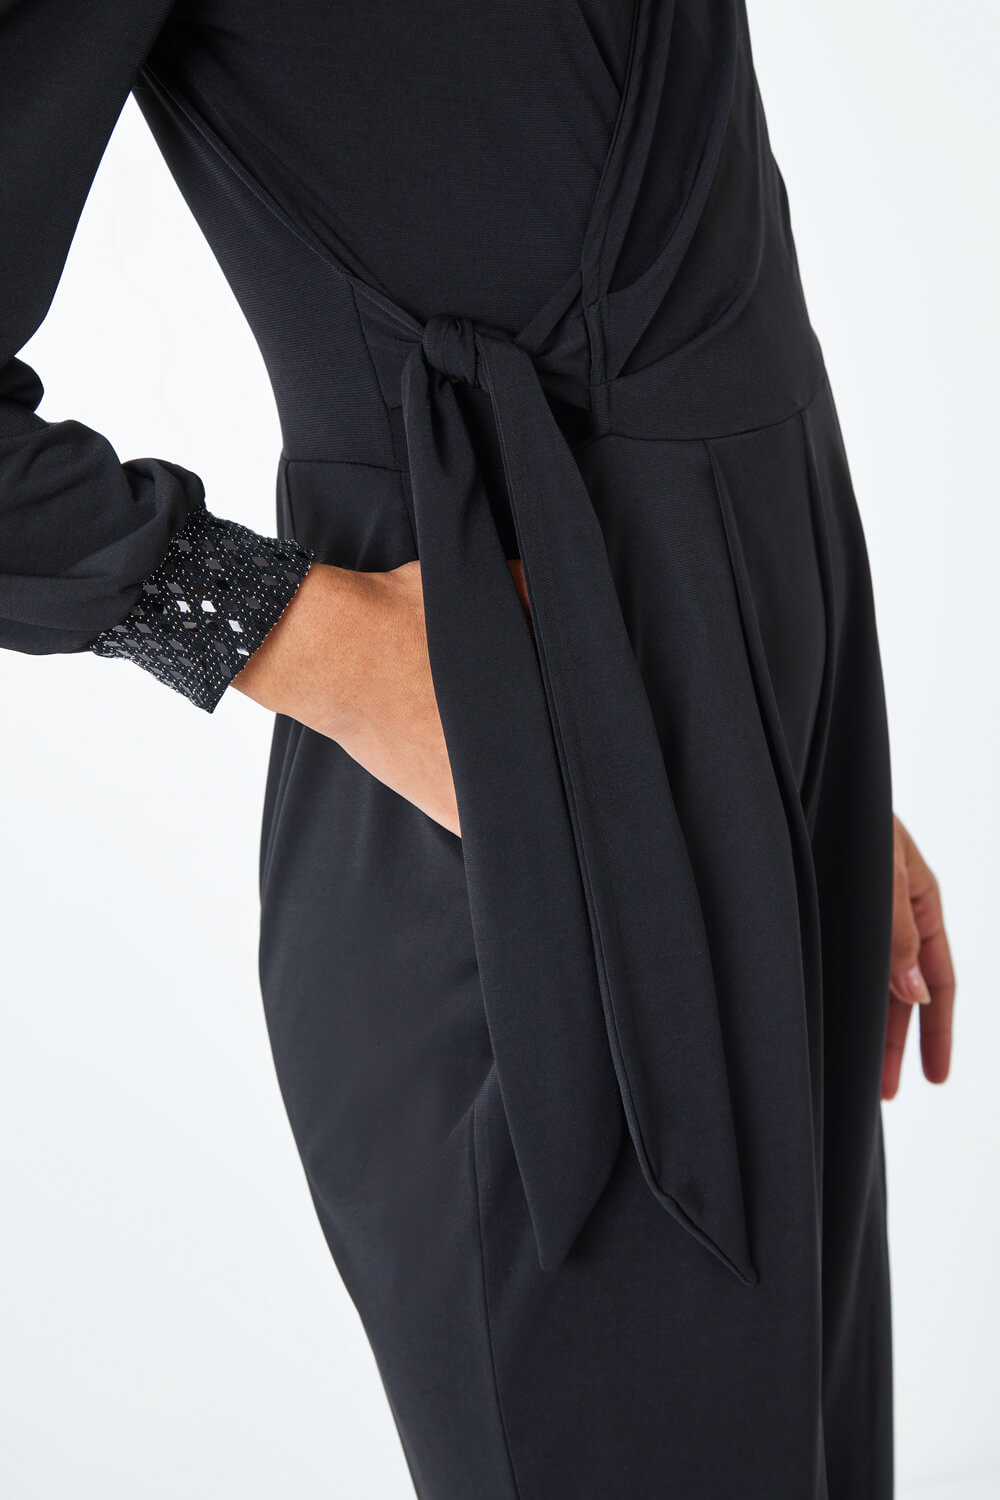 Black Embellished Detail Wrap Jumpsuit, Image 5 of 5